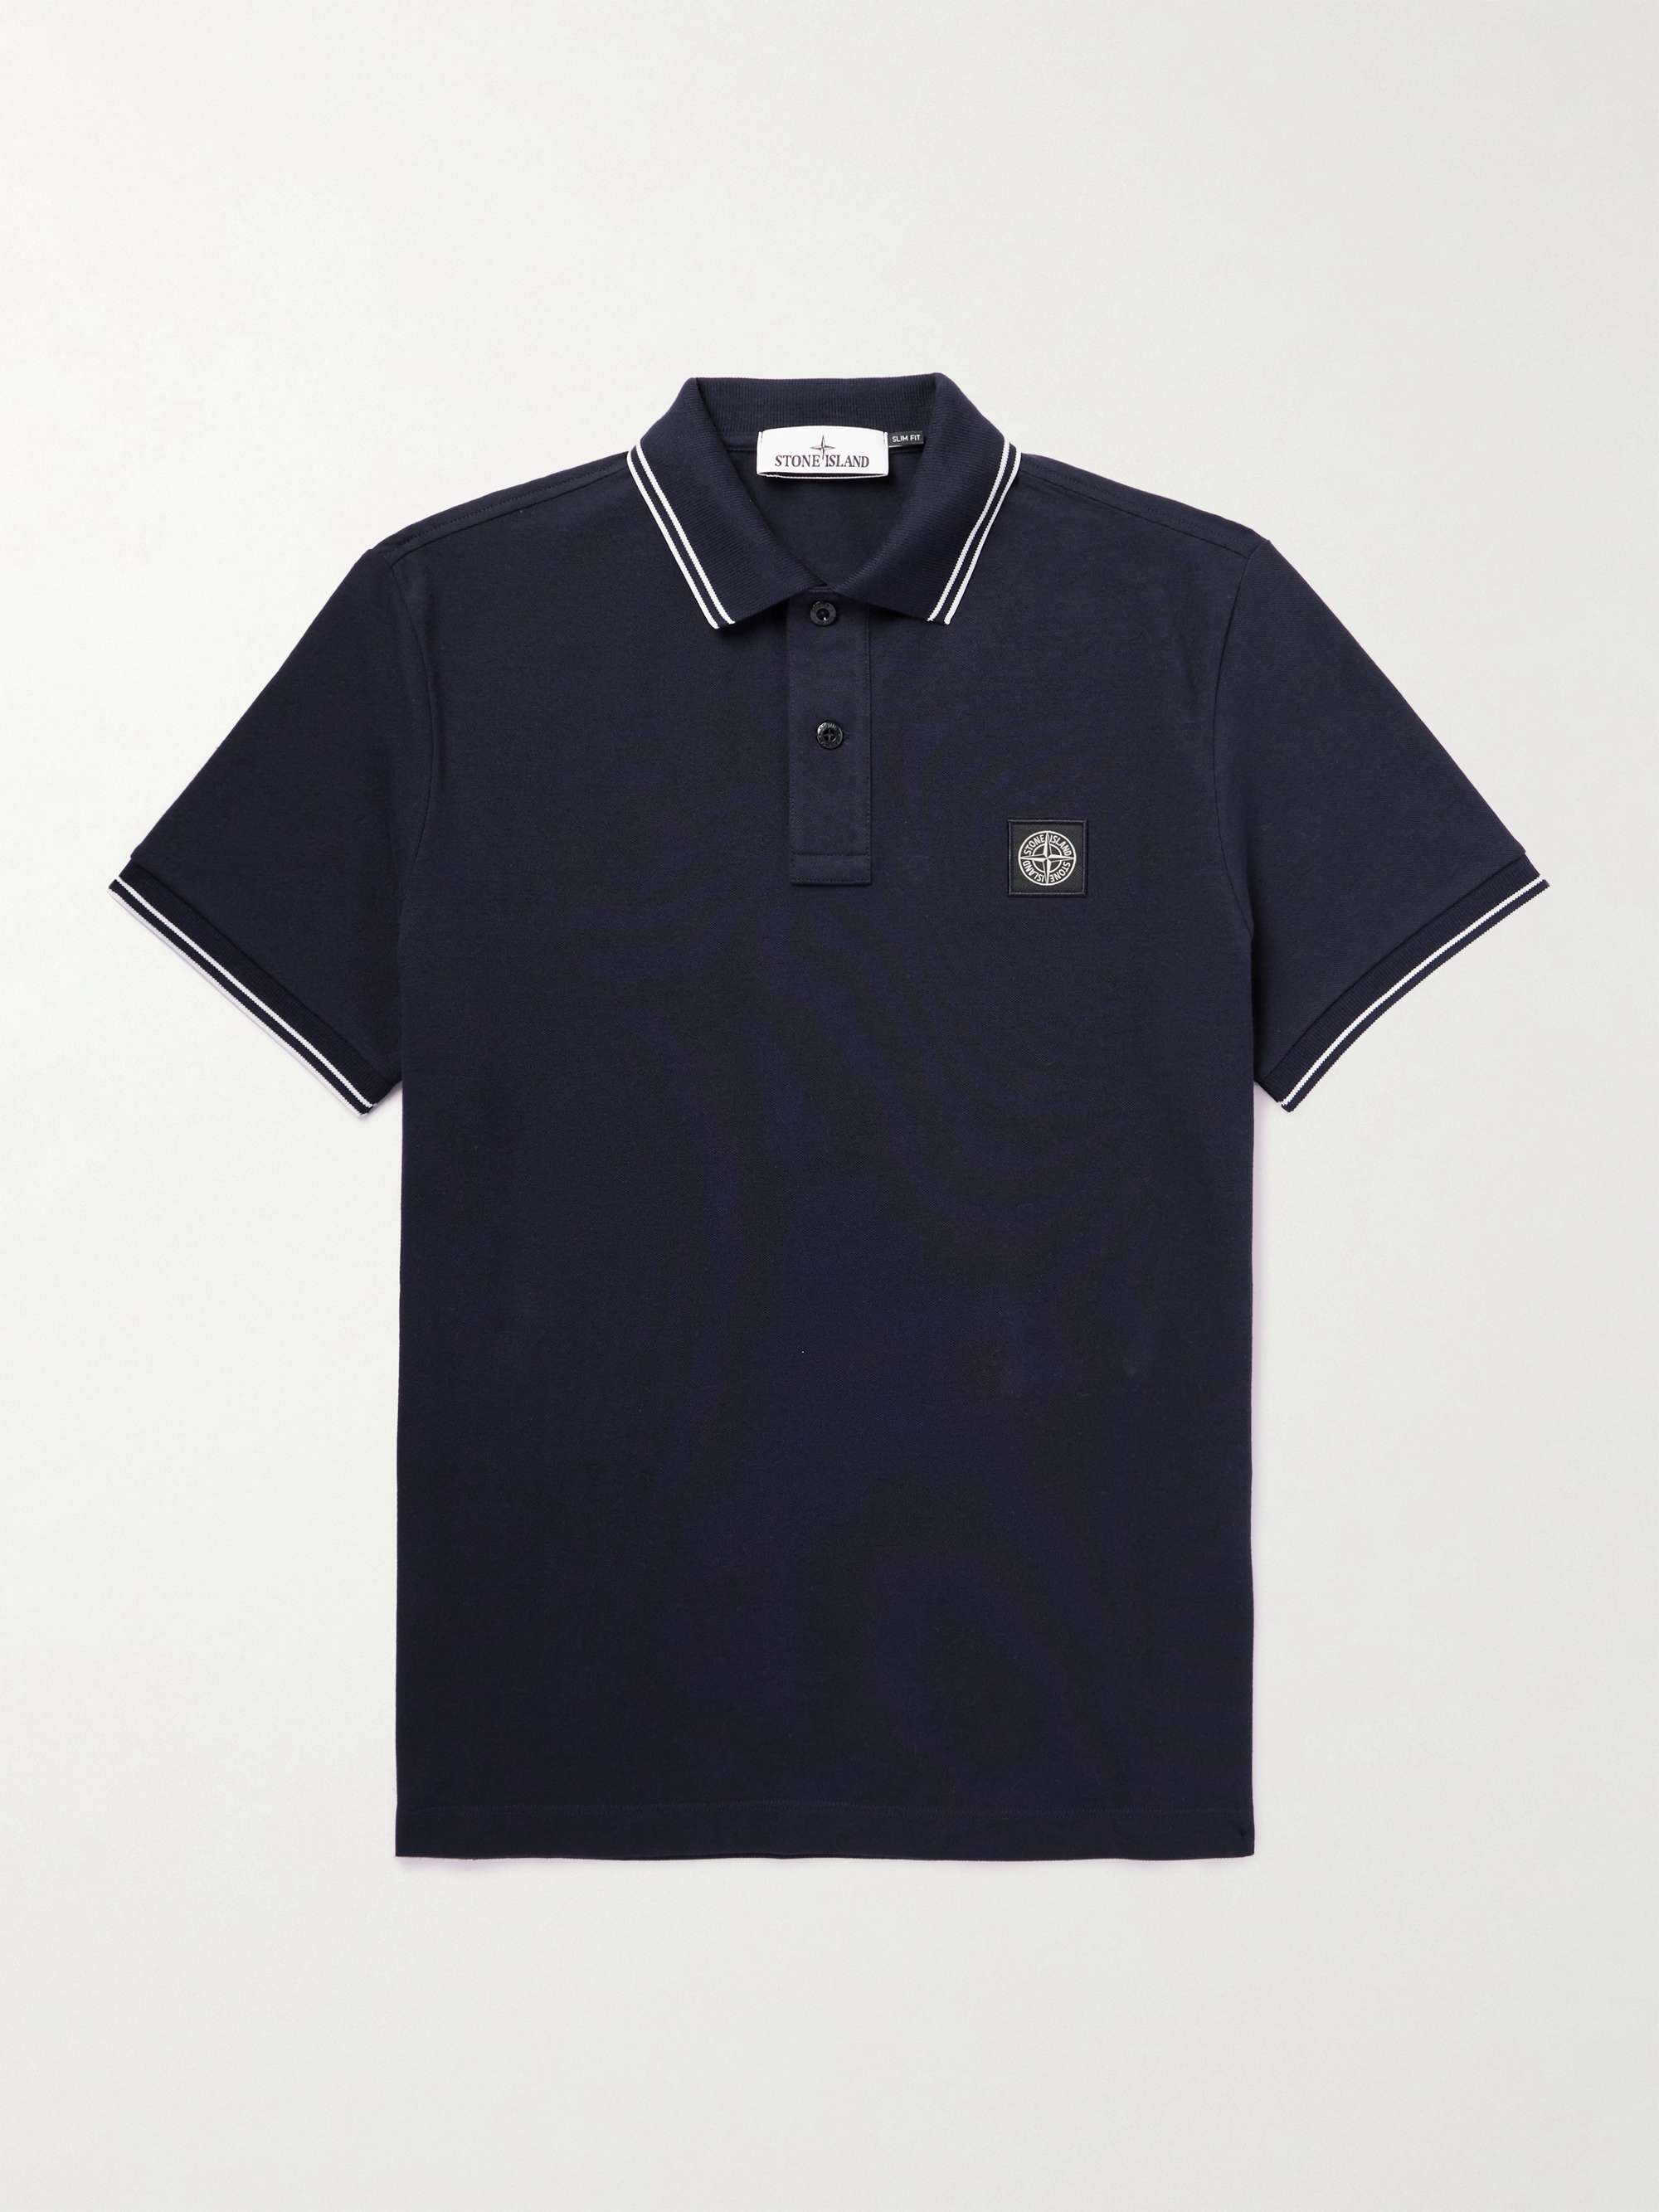 STONE ISLAND Logo-Appliquéd Cotton-Blend Piqué Polo Shirt for Men